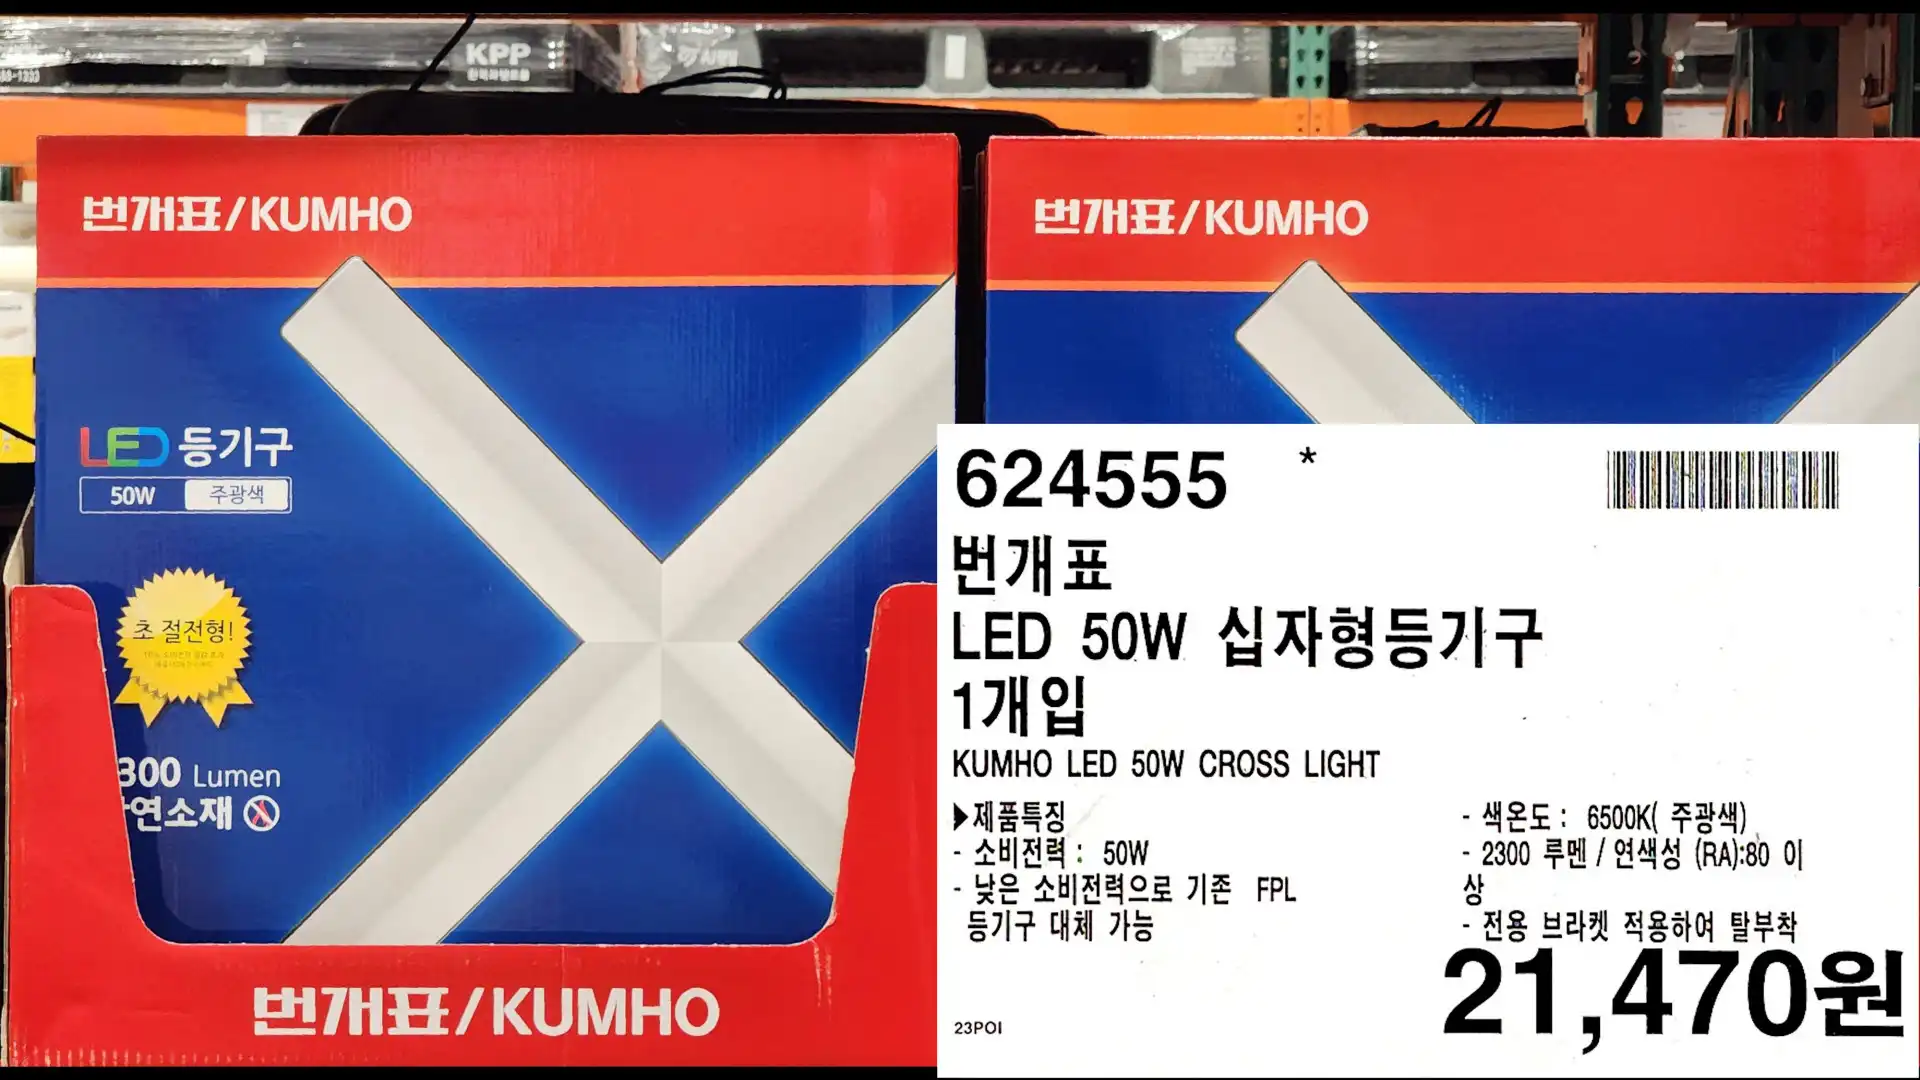 번개표
LED 50W 십자형등기구
1개입
KUMHO LED 50W CROSS LIGHT
제품특징
-소비전력: 50W
-낮은 소비전력으로 기존 FPL
등기구 대체 가능
-색온도 : 6500K(주광색)
-2300 루멘/ 연색성 (RA):80 이상
-전용 브라켓 적용하여 탈부착
21&#44;470원